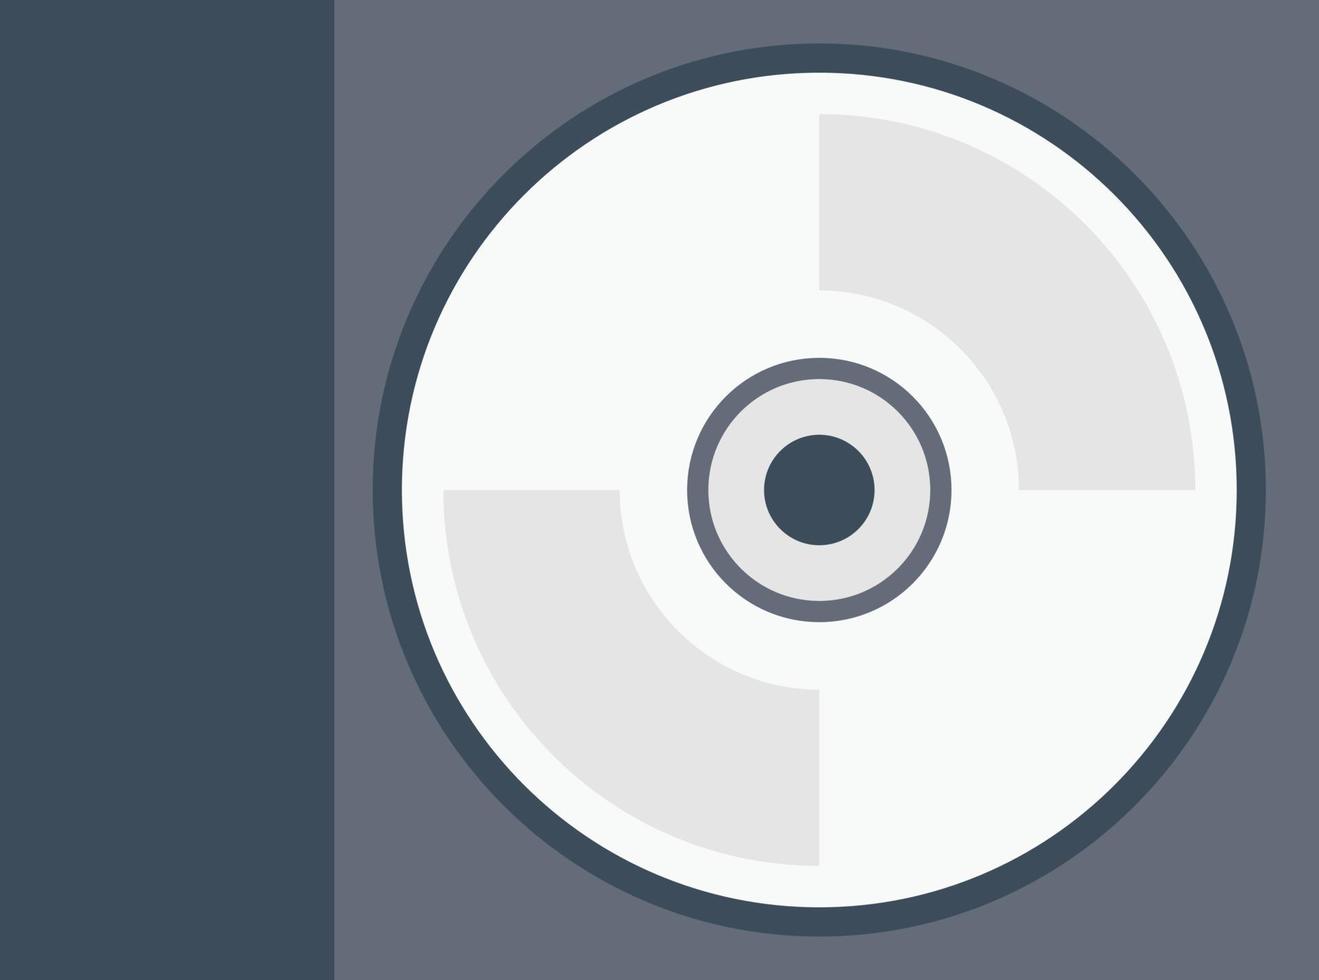 ilustração em vetor capa cd em um icons.vector de qualidade background.premium para o conceito e design gráfico.